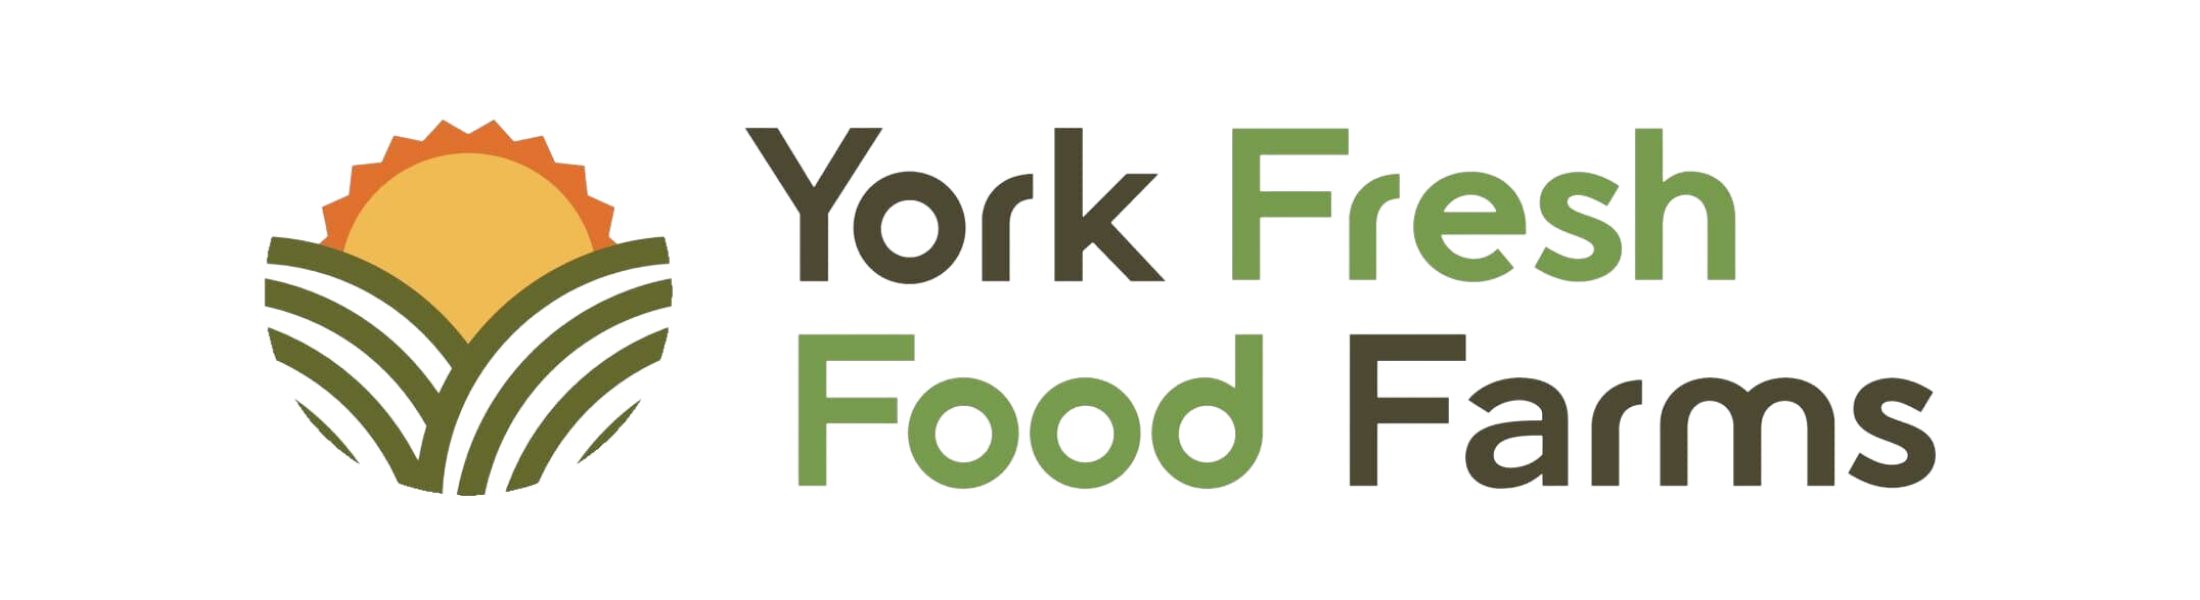 York Fresh Food Farms